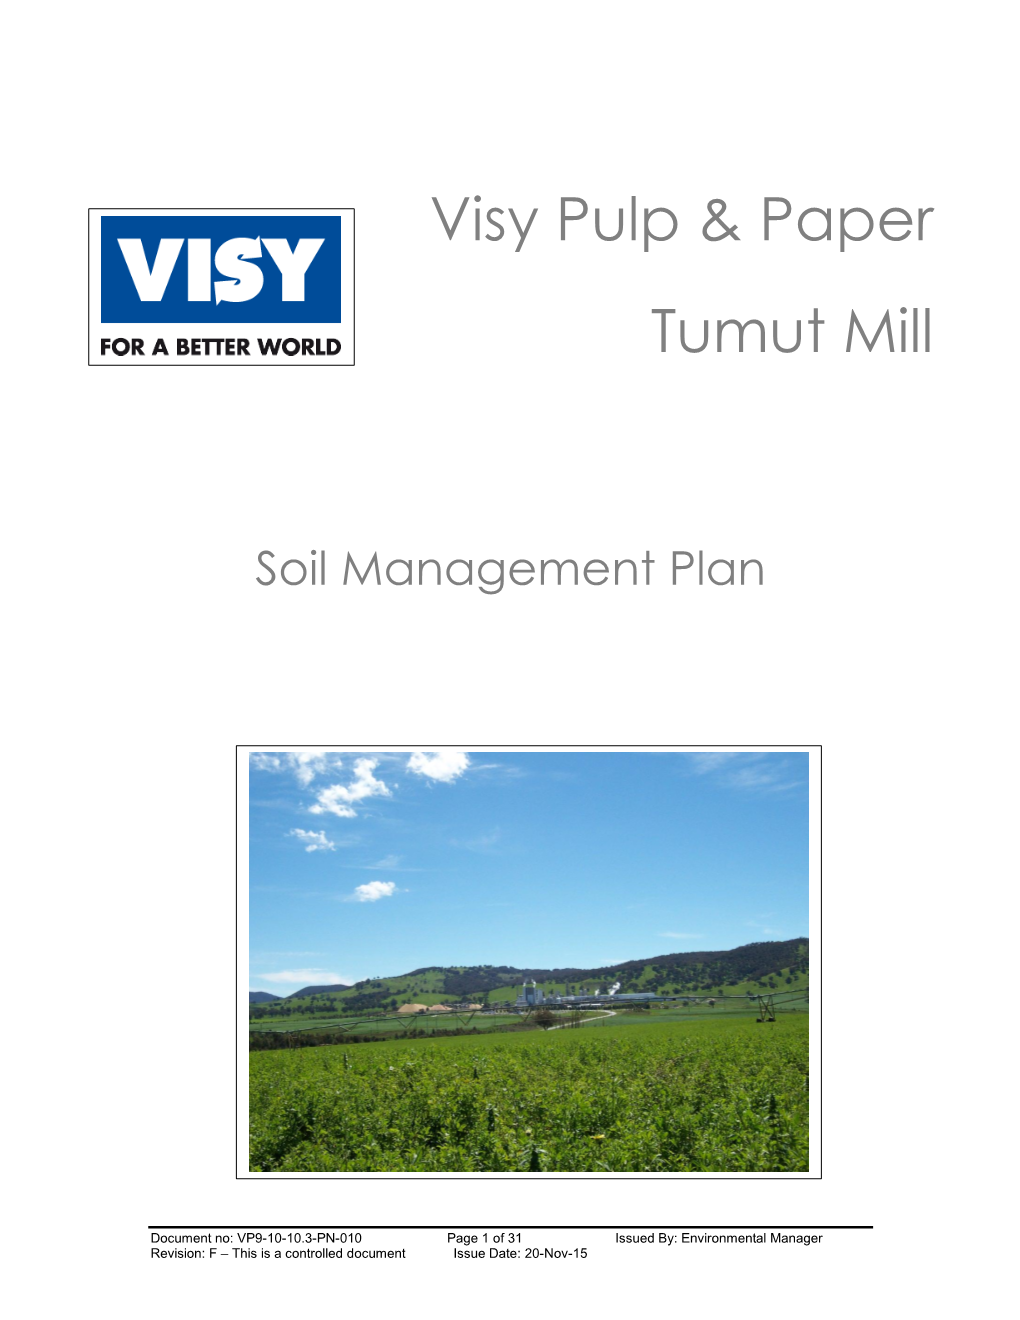 Visy Pulp & Paper Tumut Mill